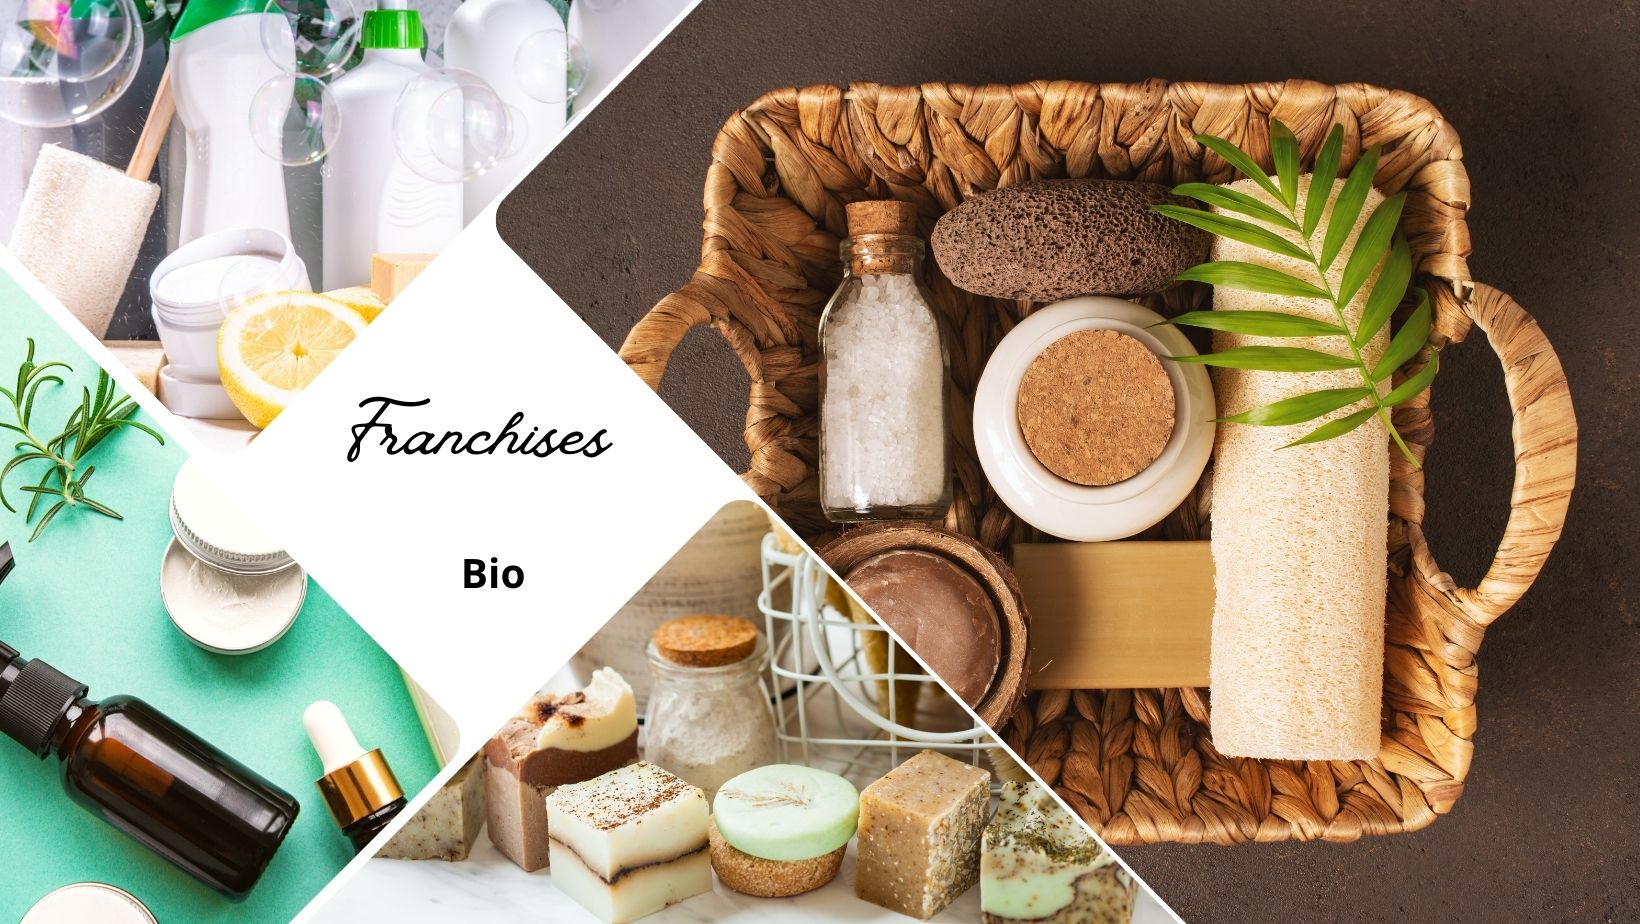 Les franchises biologiques : l'émergence d'une excellence gastronomique et éthique